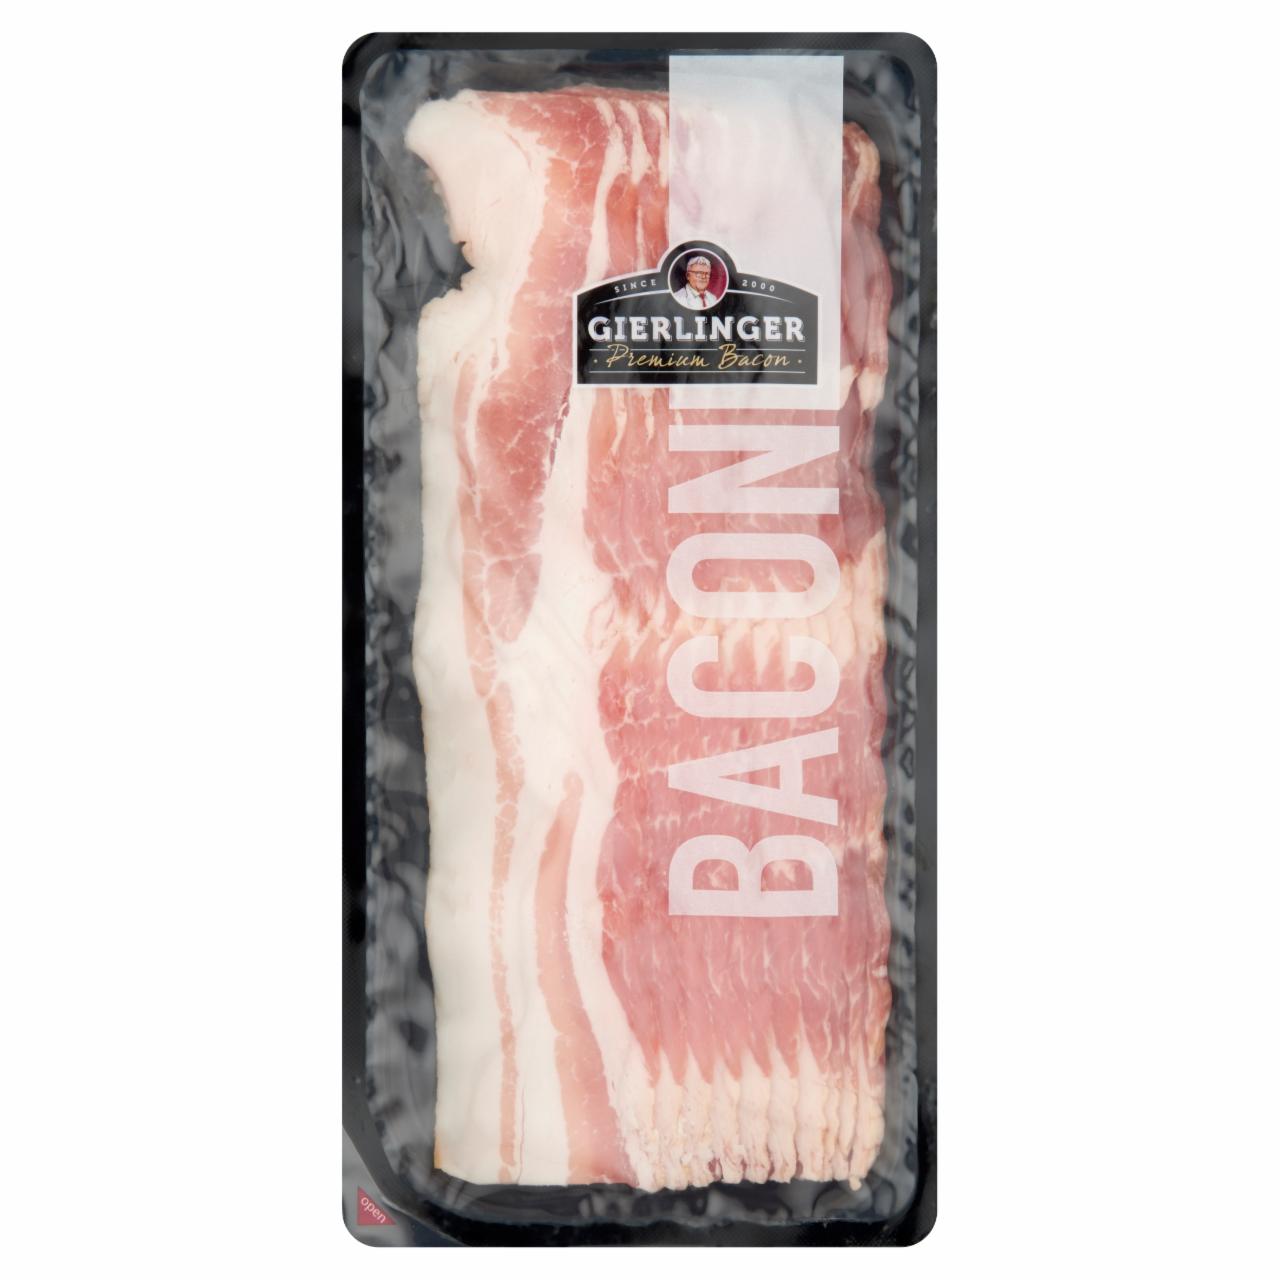 Képek - Gierlinger's szeletelt bacon szalonna 200 g